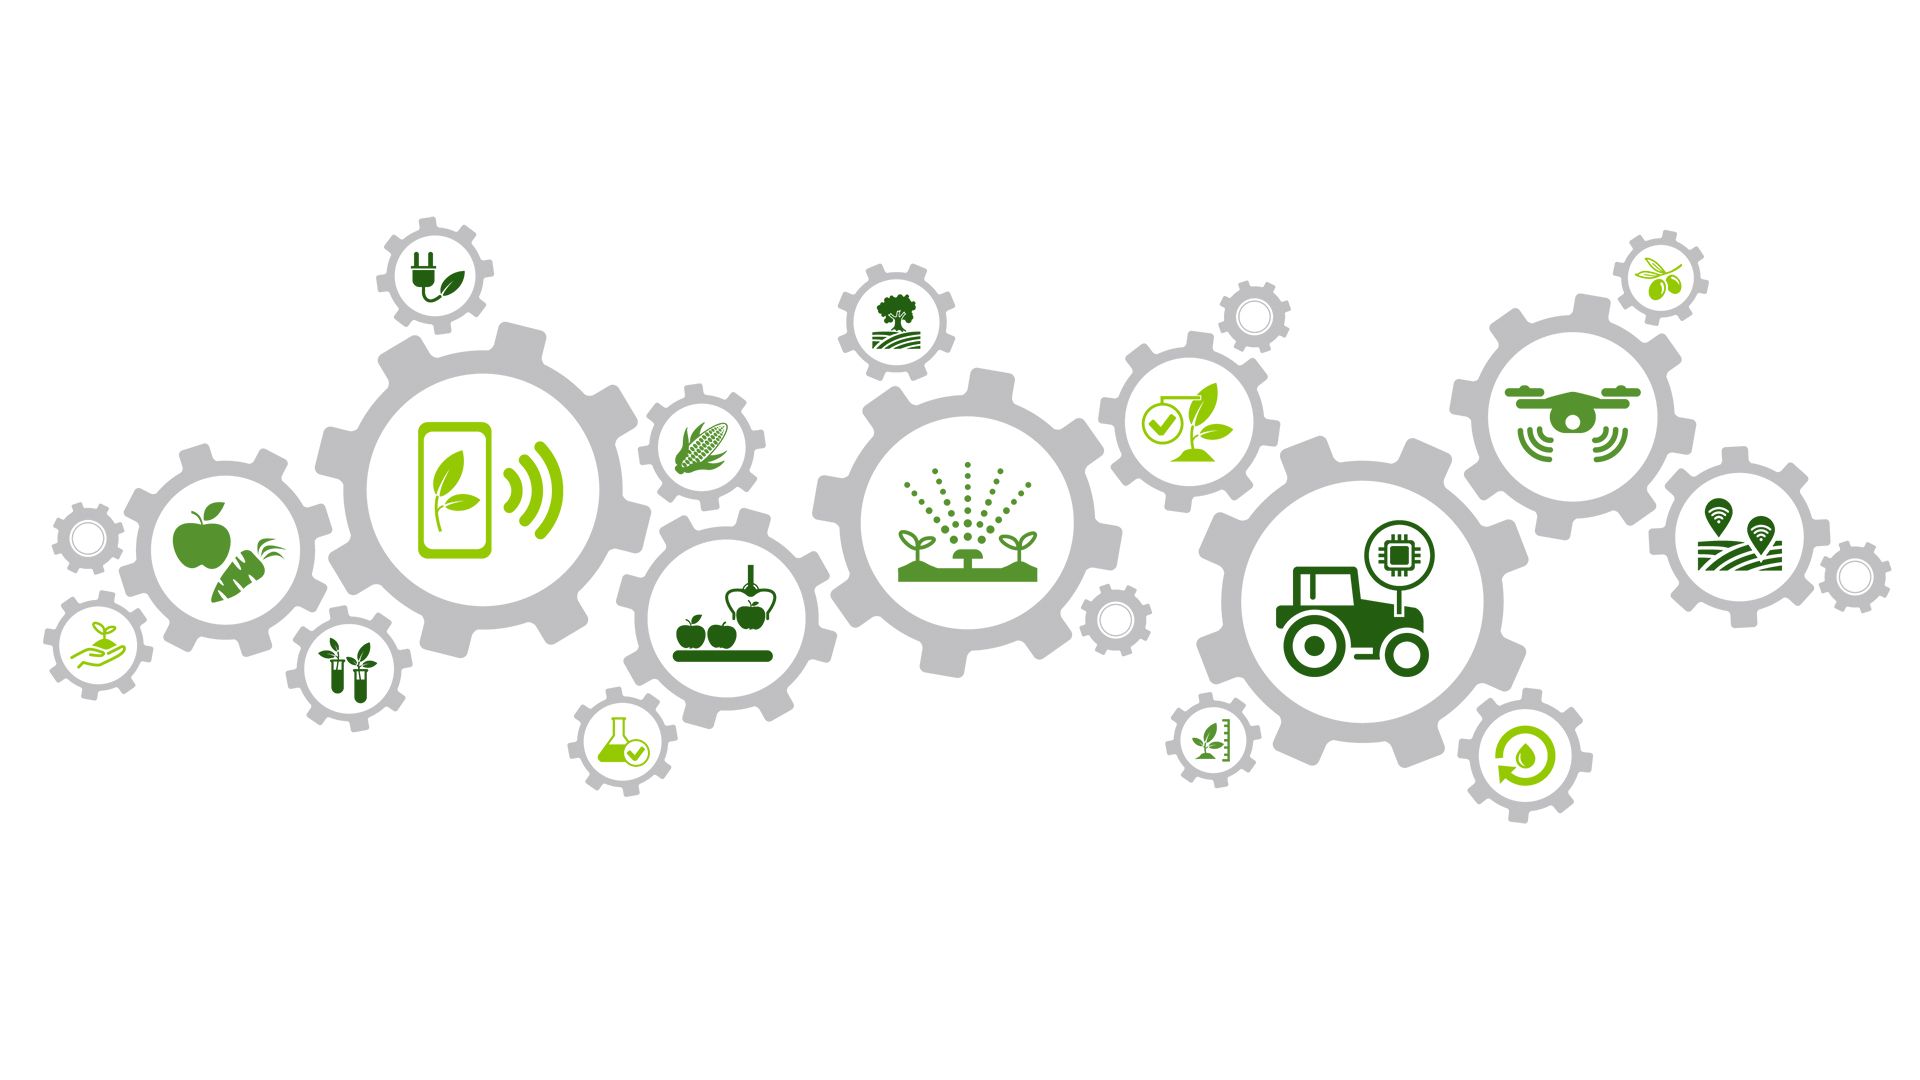 Сельское хозяйство - AgroTech - АгроТех - Цифровые технологии в сельском хозяйстве (агропромышленном комплексе)